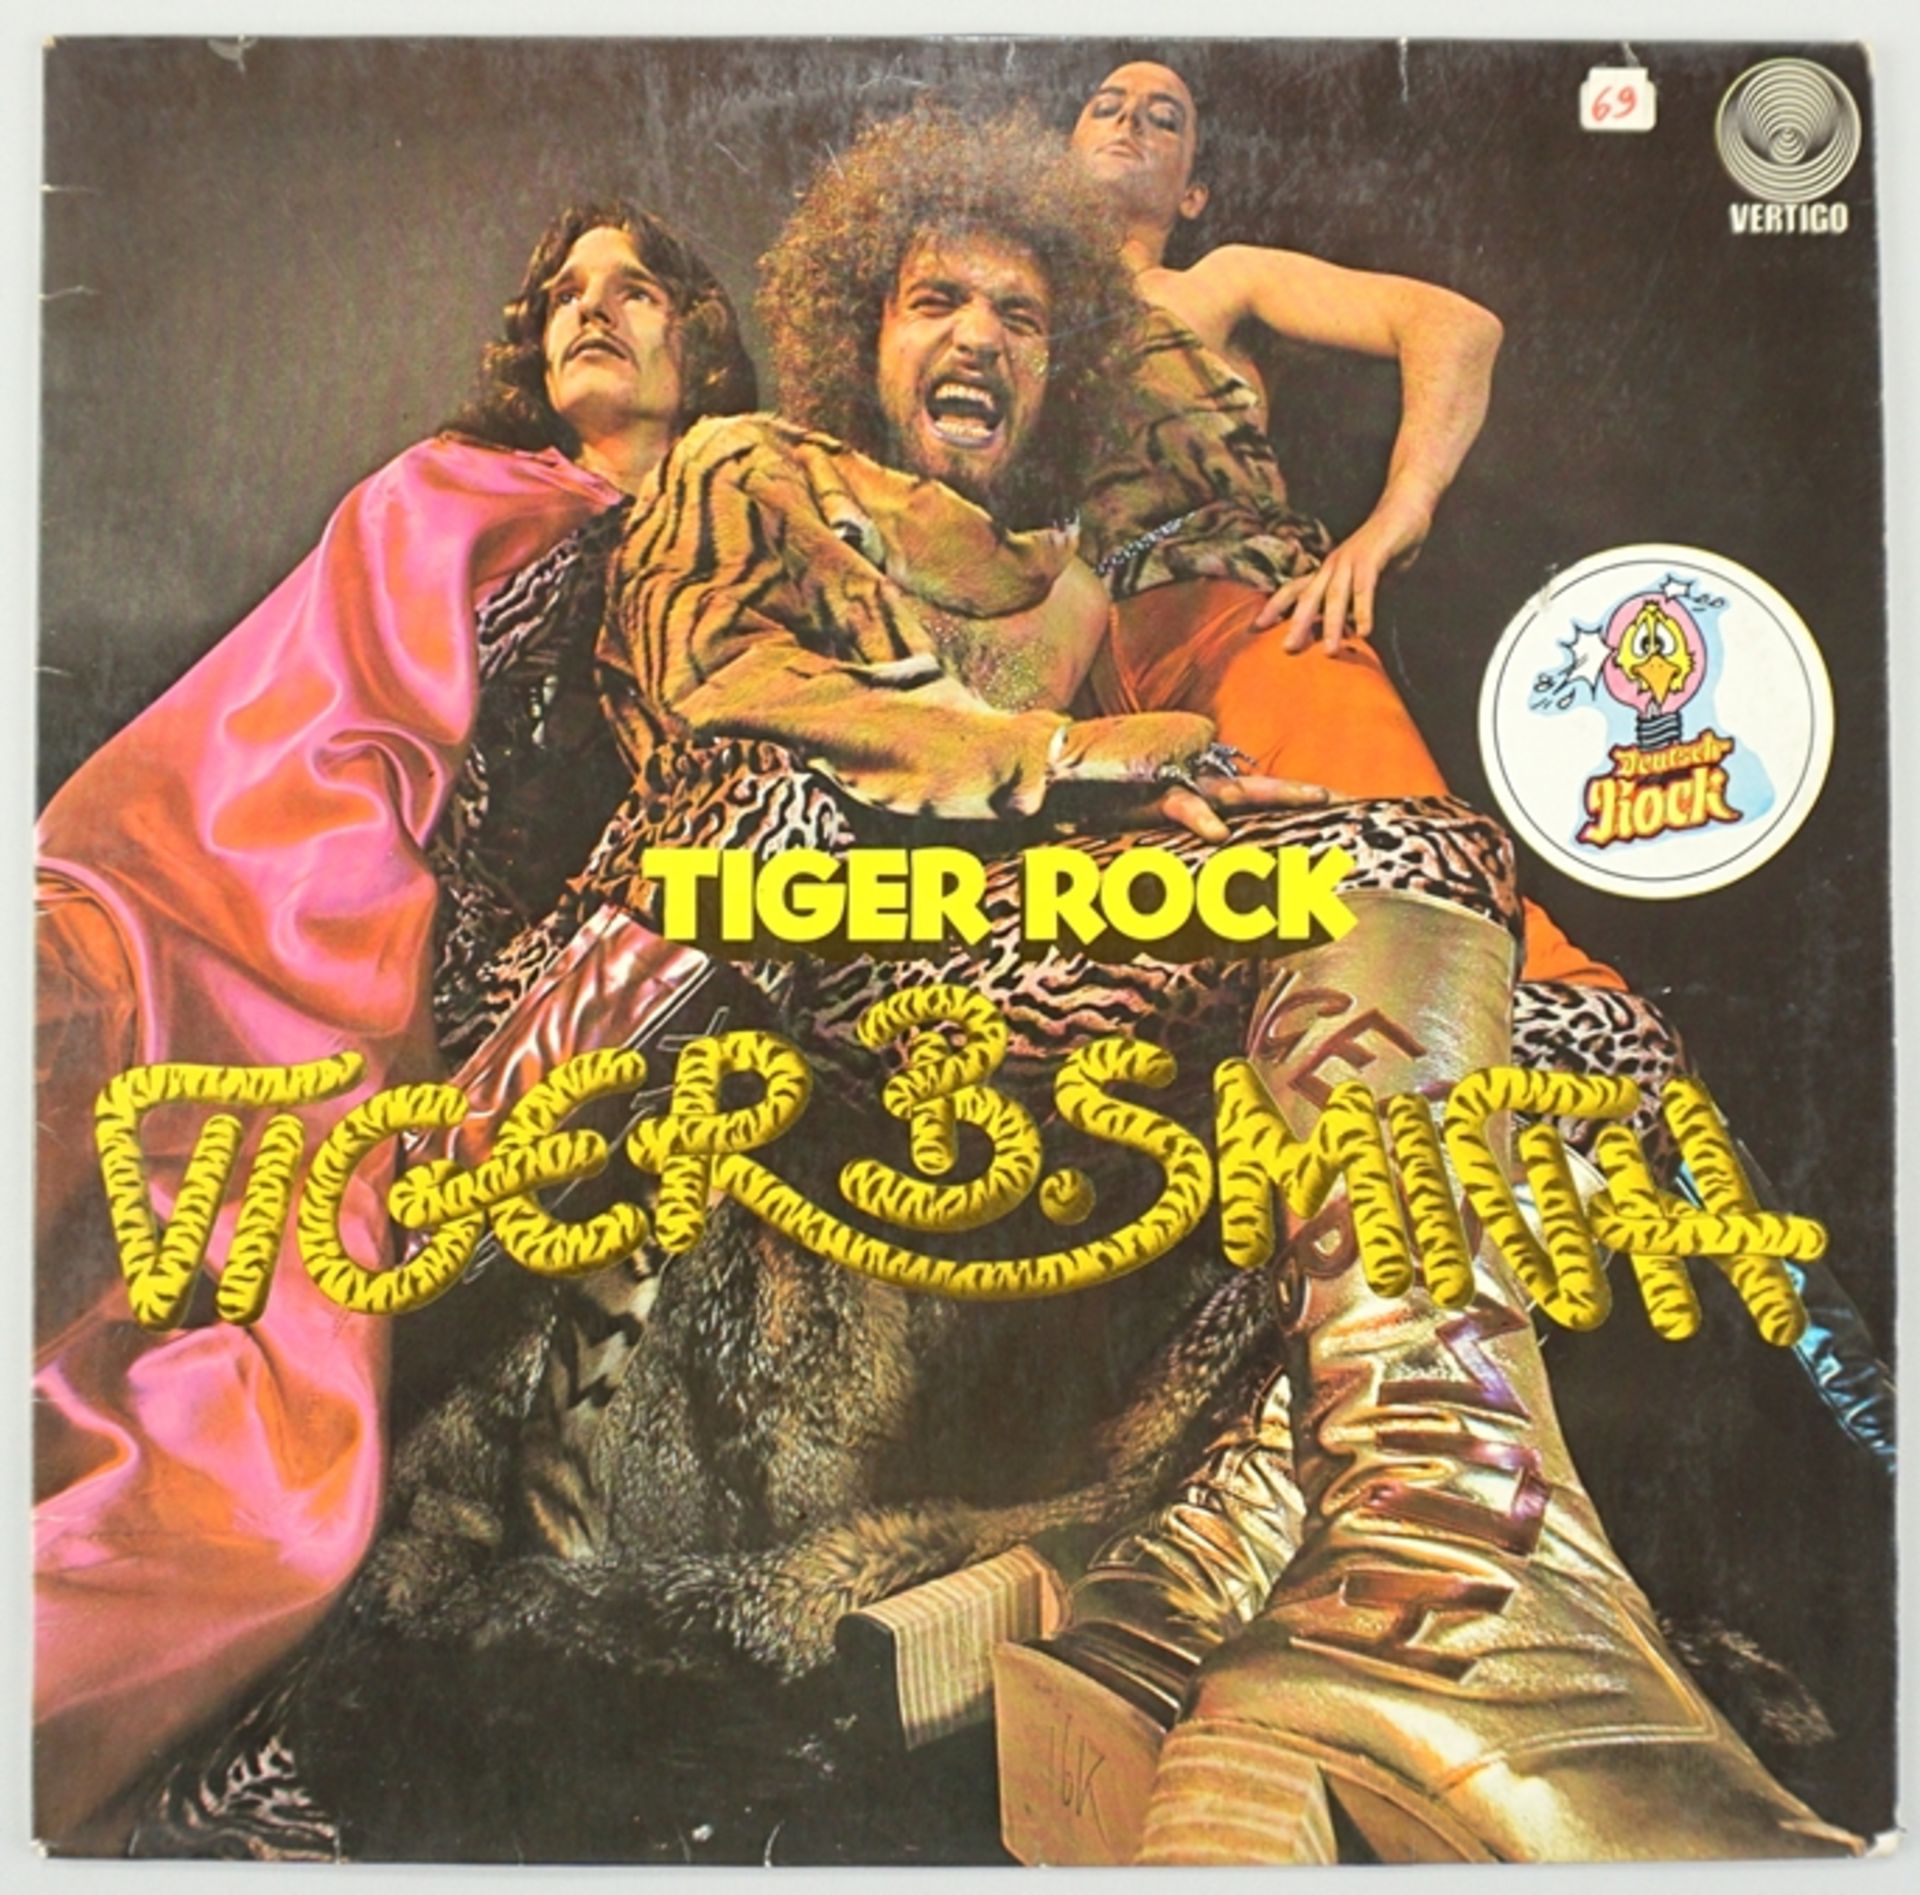 Vinyl LP Tiger B. Smith - Tiger Rock, VERTICO, 1972